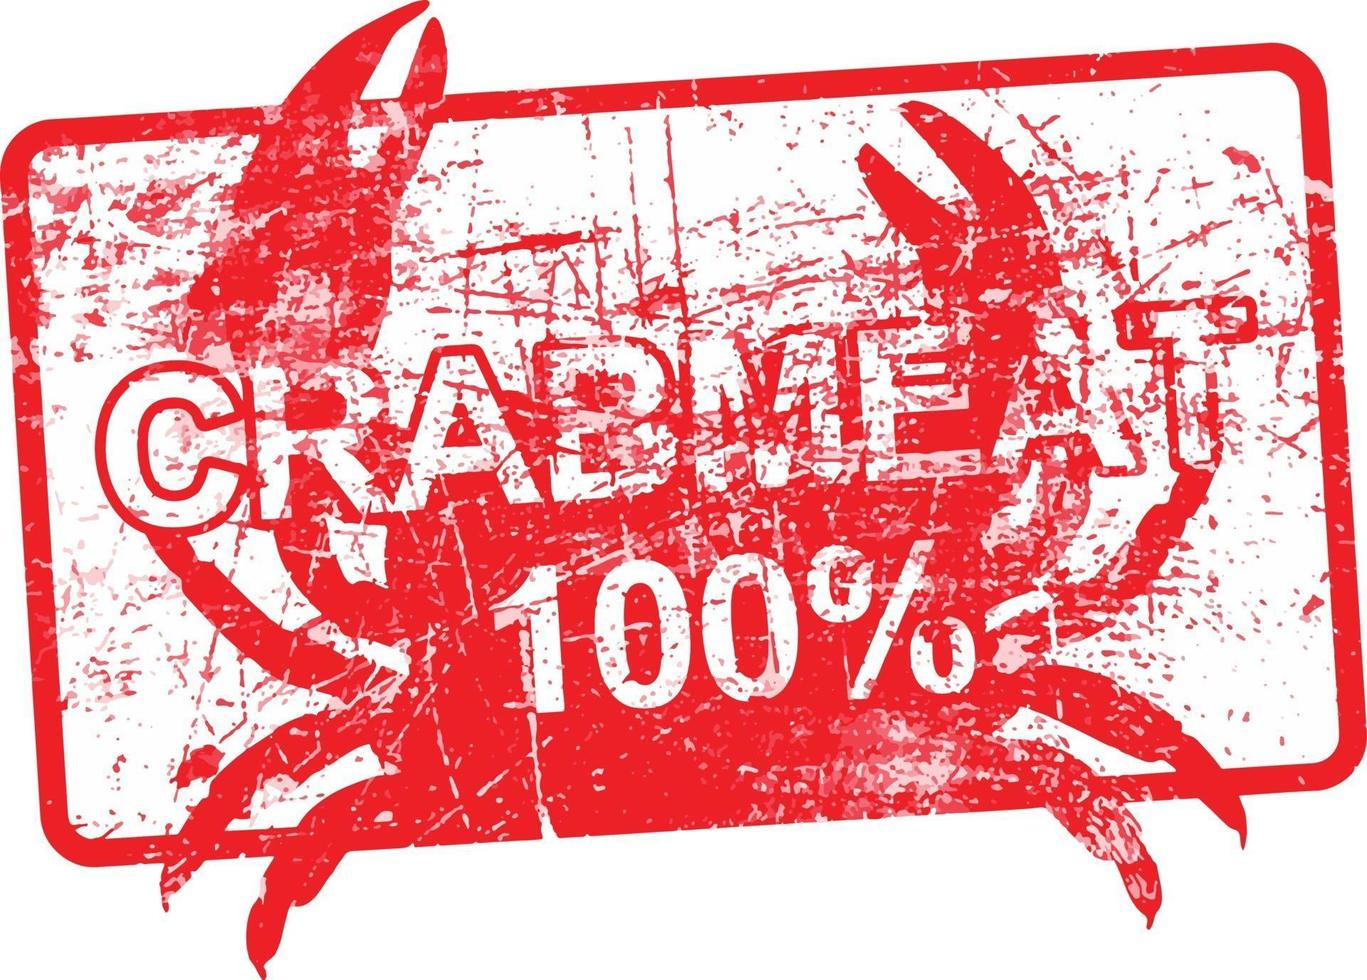 Chair de crabe 100 pour cent - timbre grungy sale en caoutchouc rouge vecteur